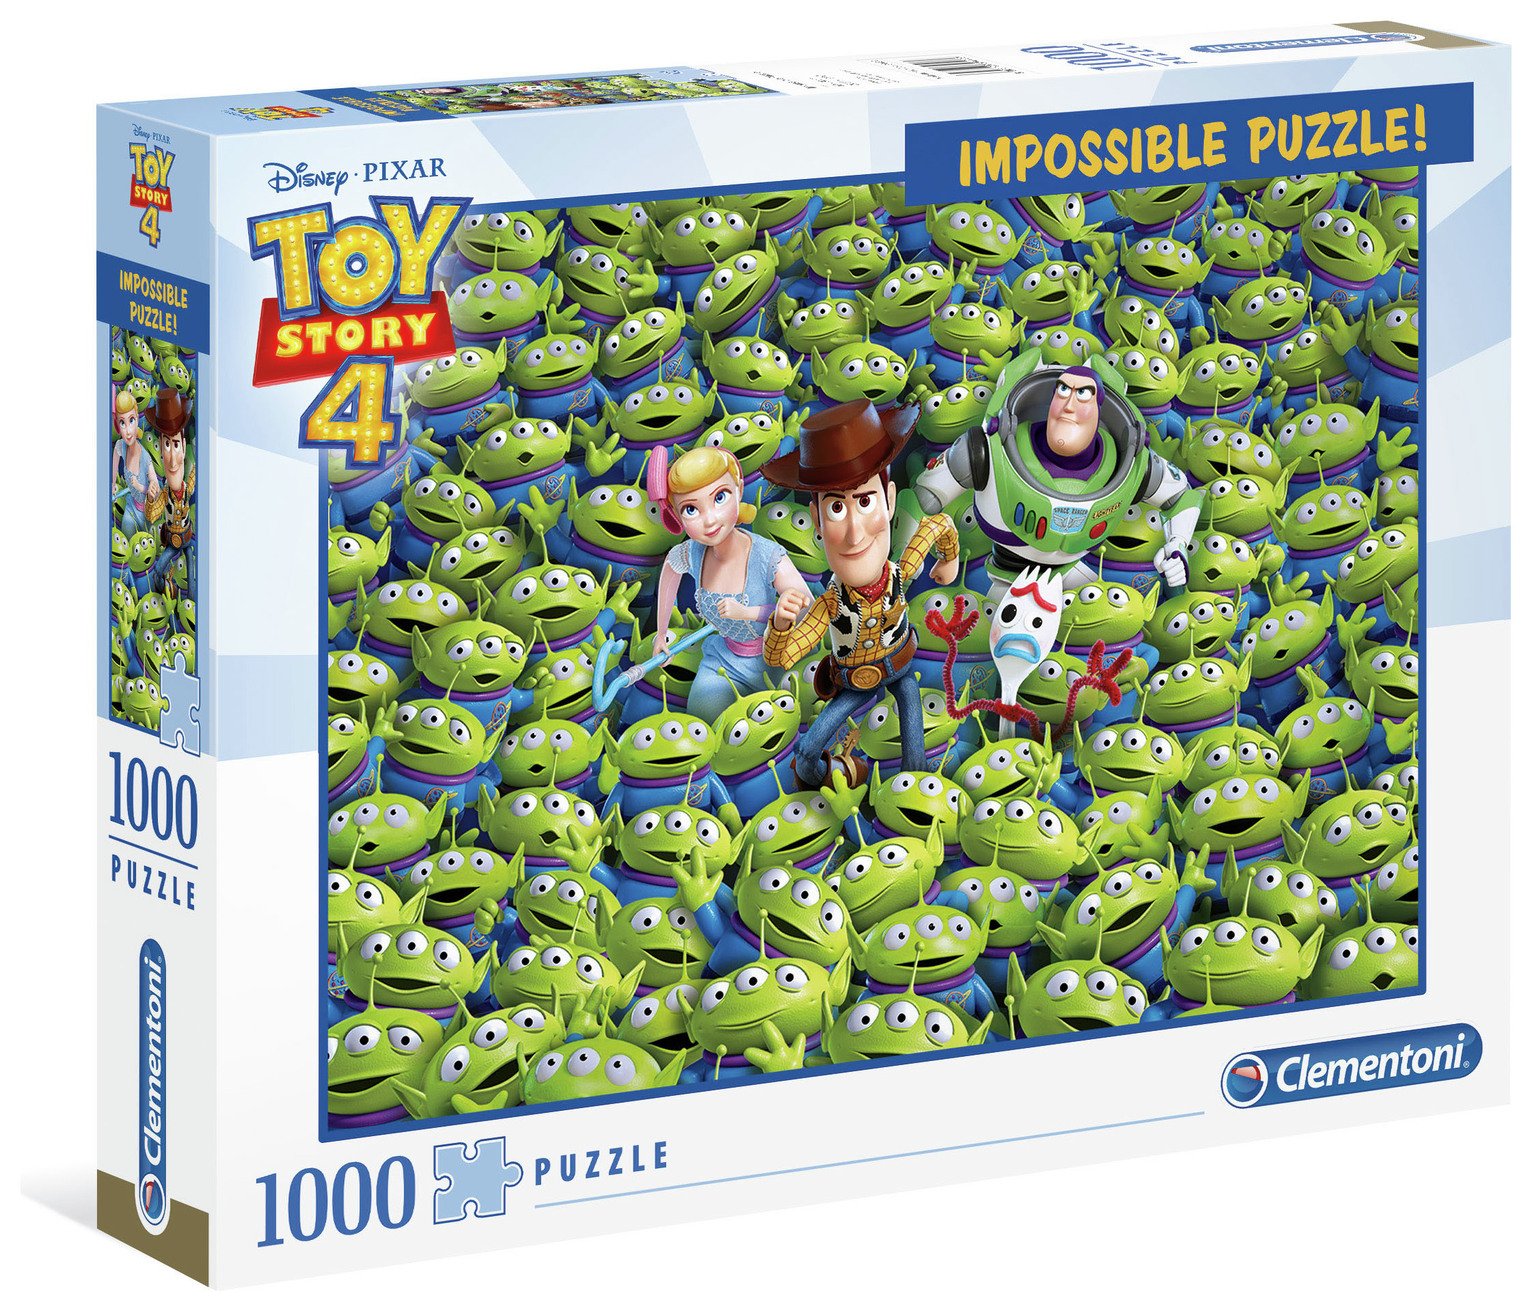 Clementoni Disney Toy Story 4 Alien 1000 Piece Puzzle